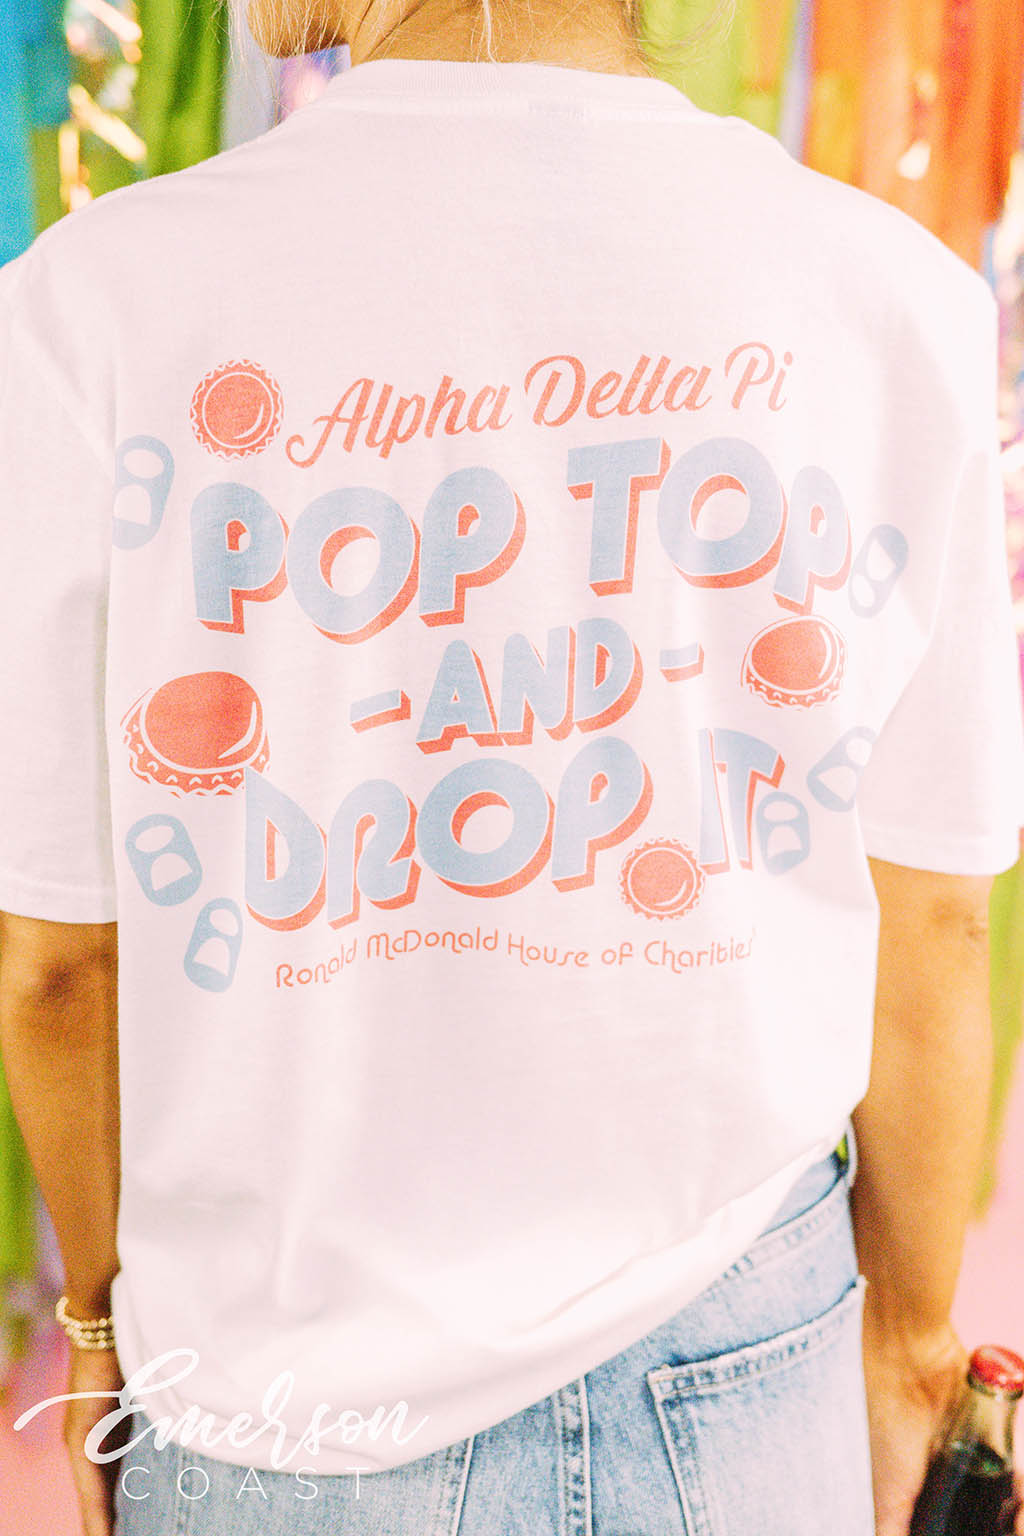 Alpha Delta Pi Philanthropy Pop Top and Drop It Bottle Cap Tee